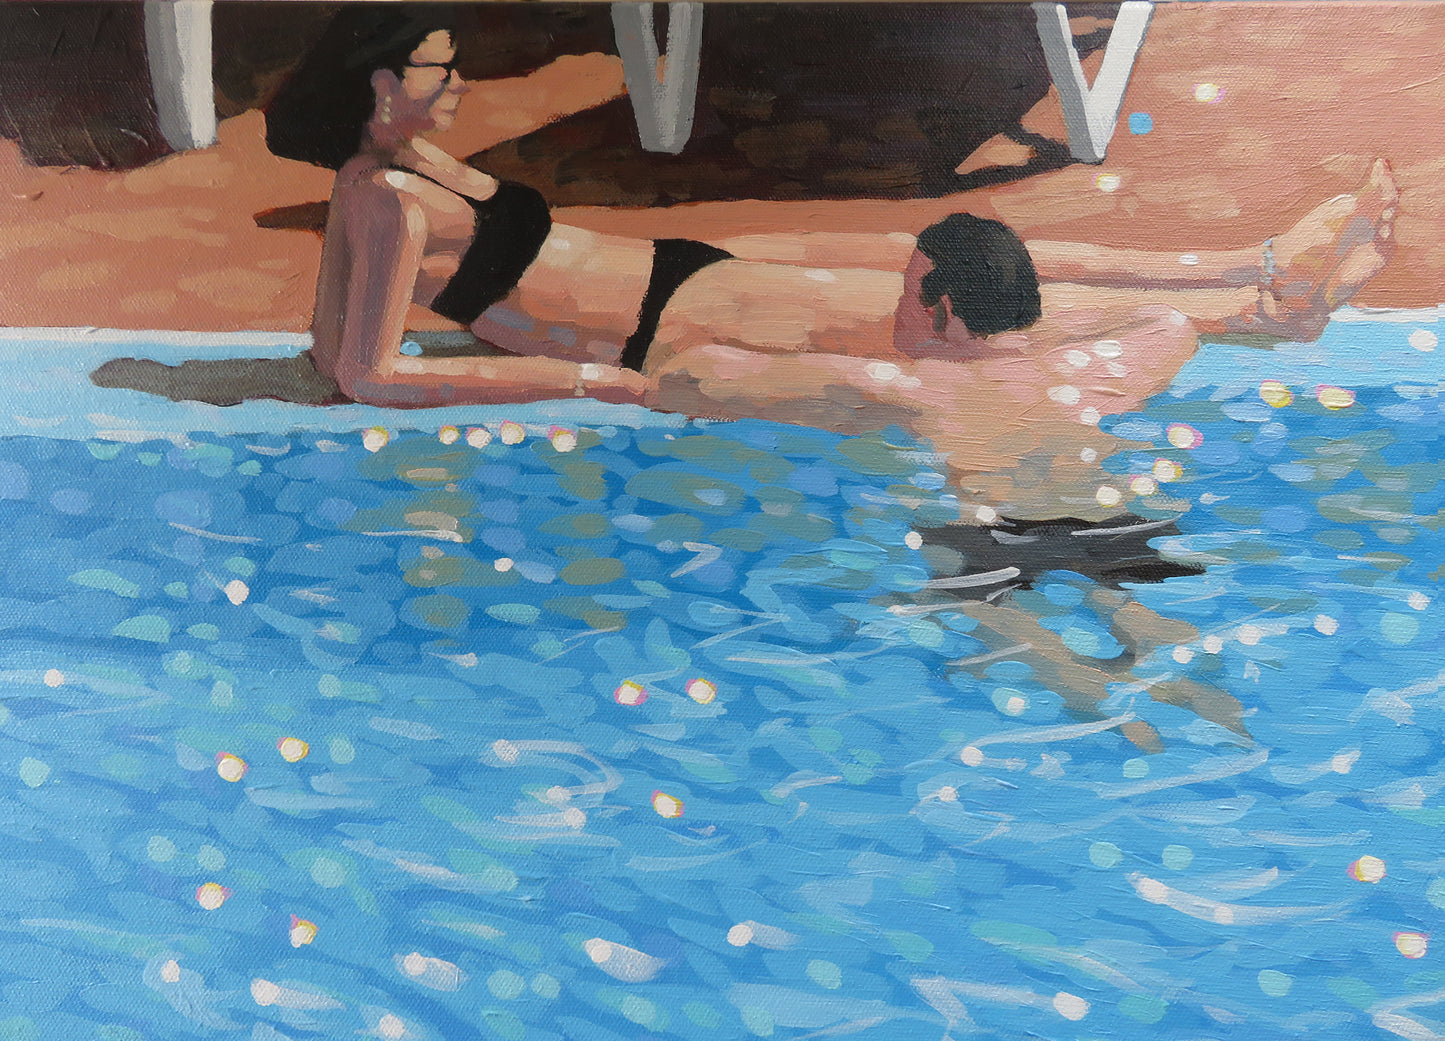 SA003. Pool life-study I - Original painting